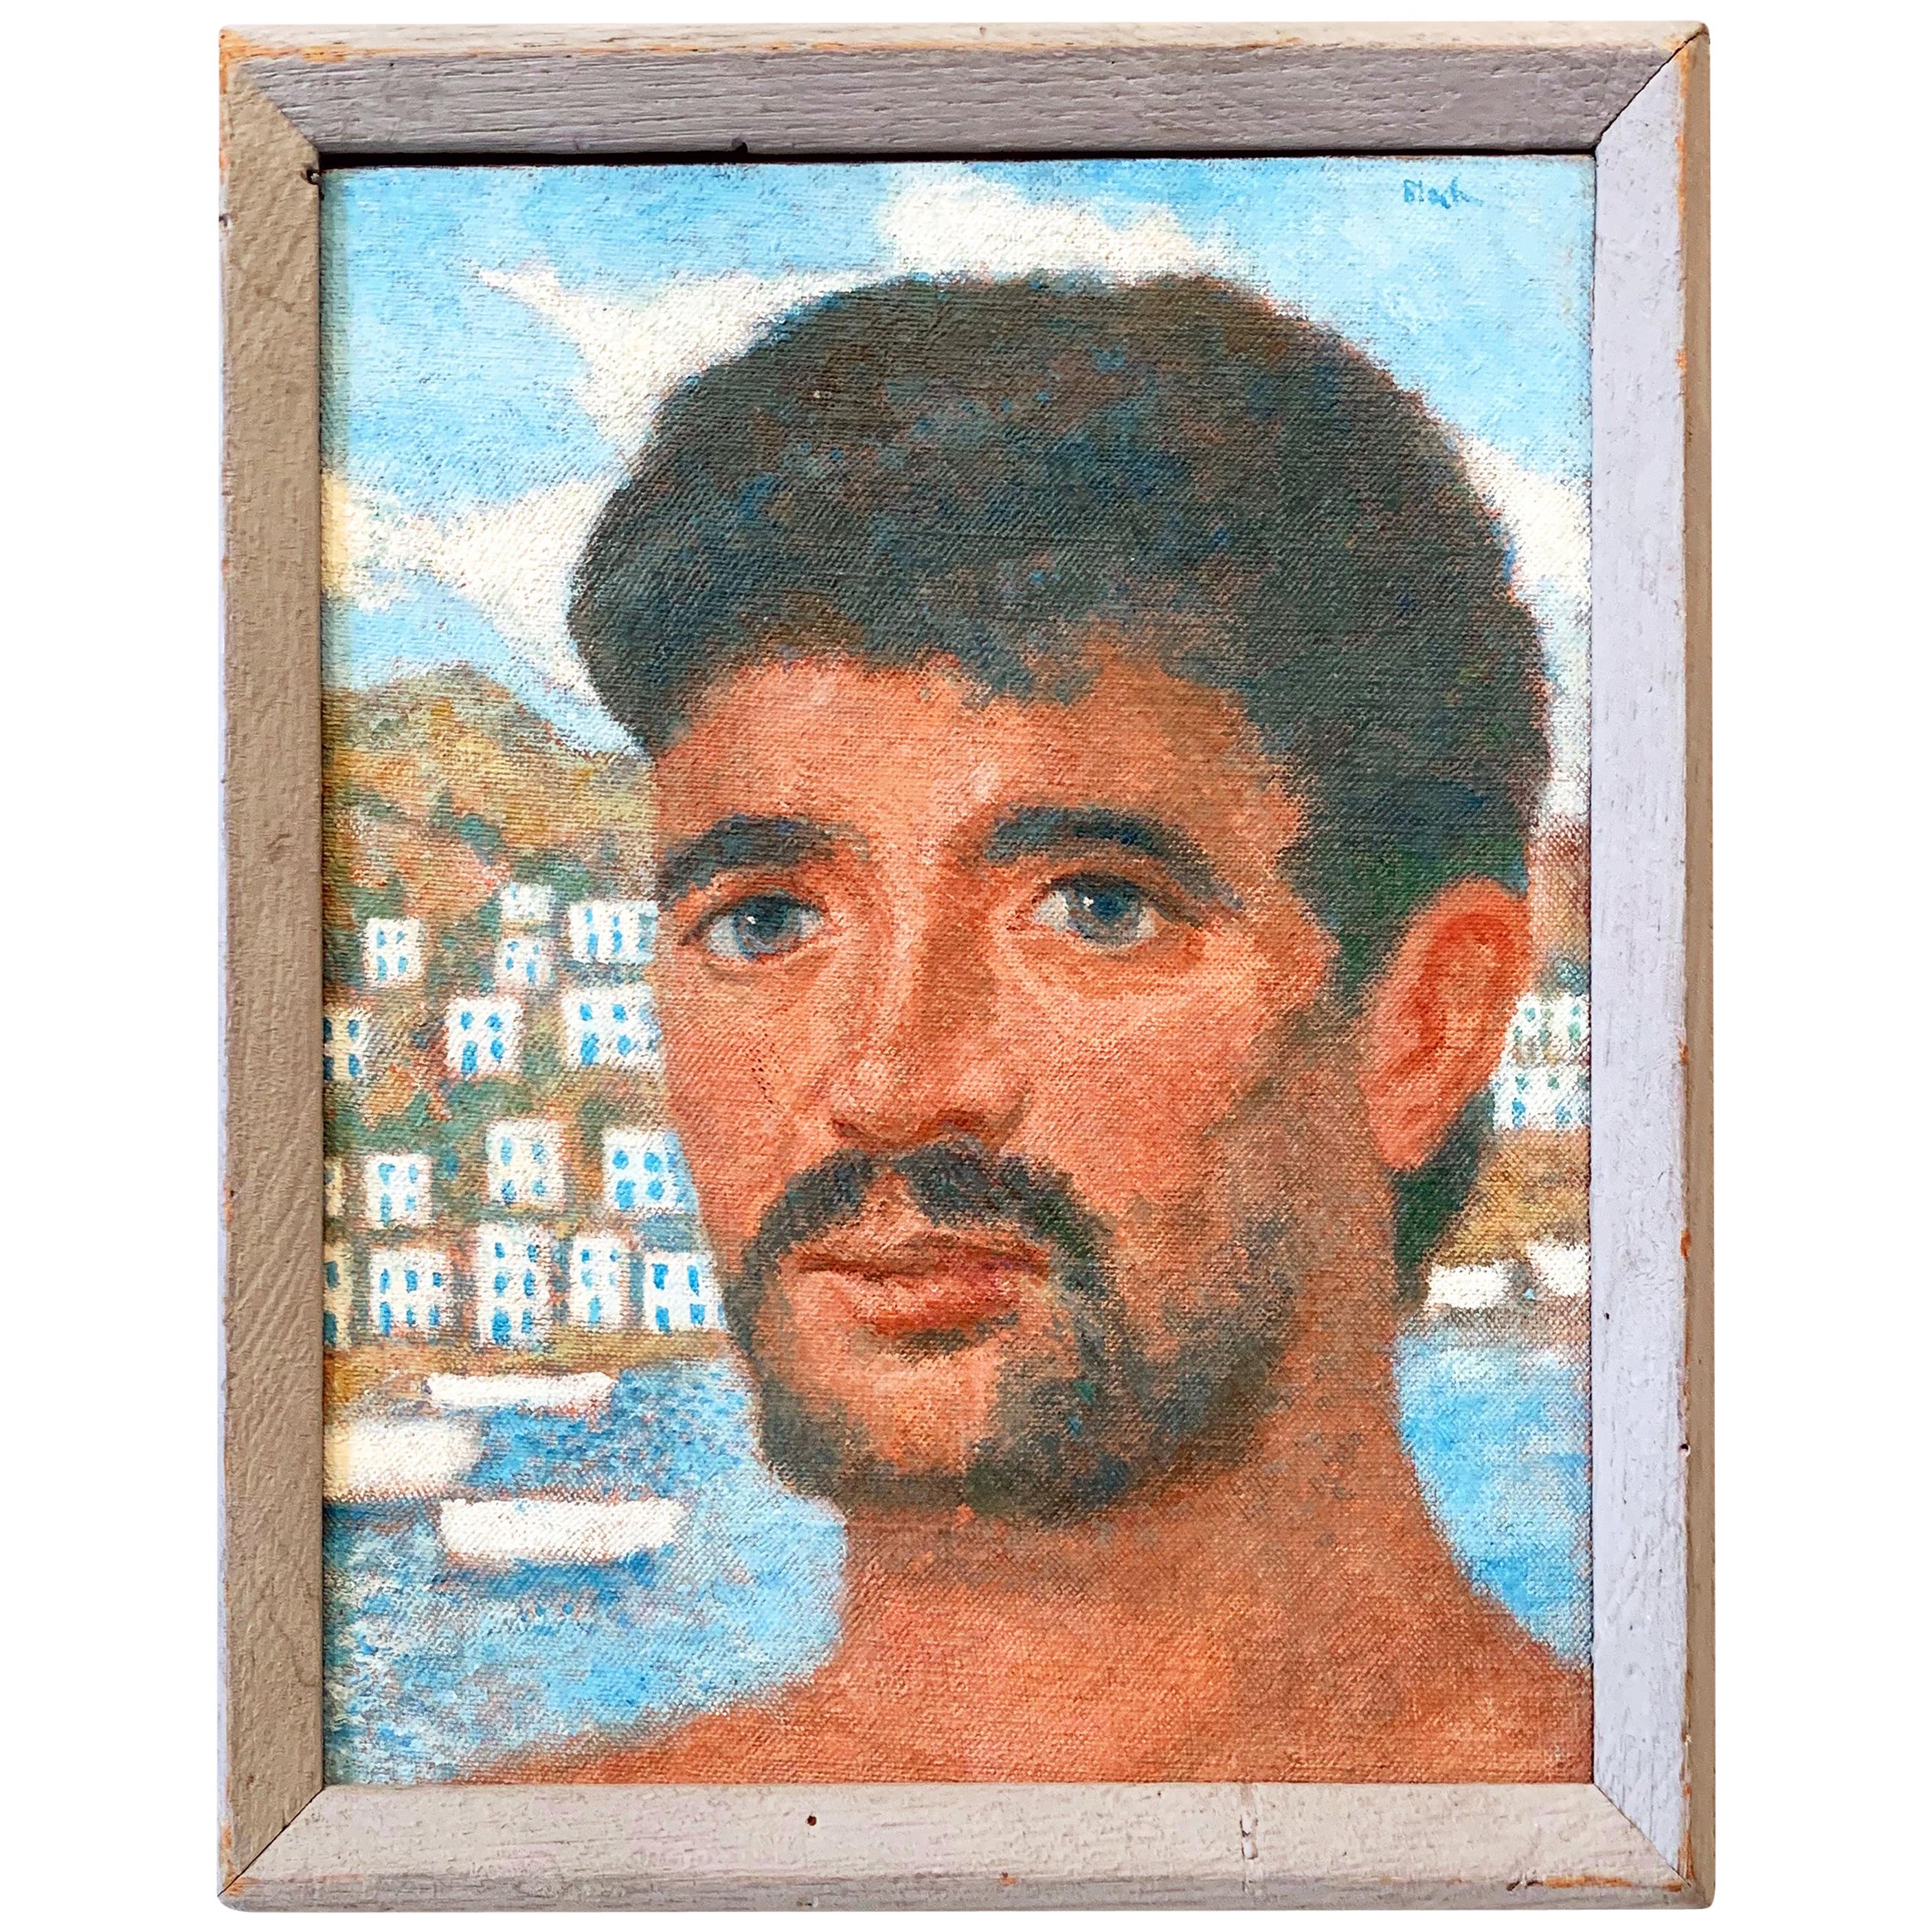 "Greek Islander, " Vivid Portrait of Greek Male Figure with Aegean Sea Backdrop